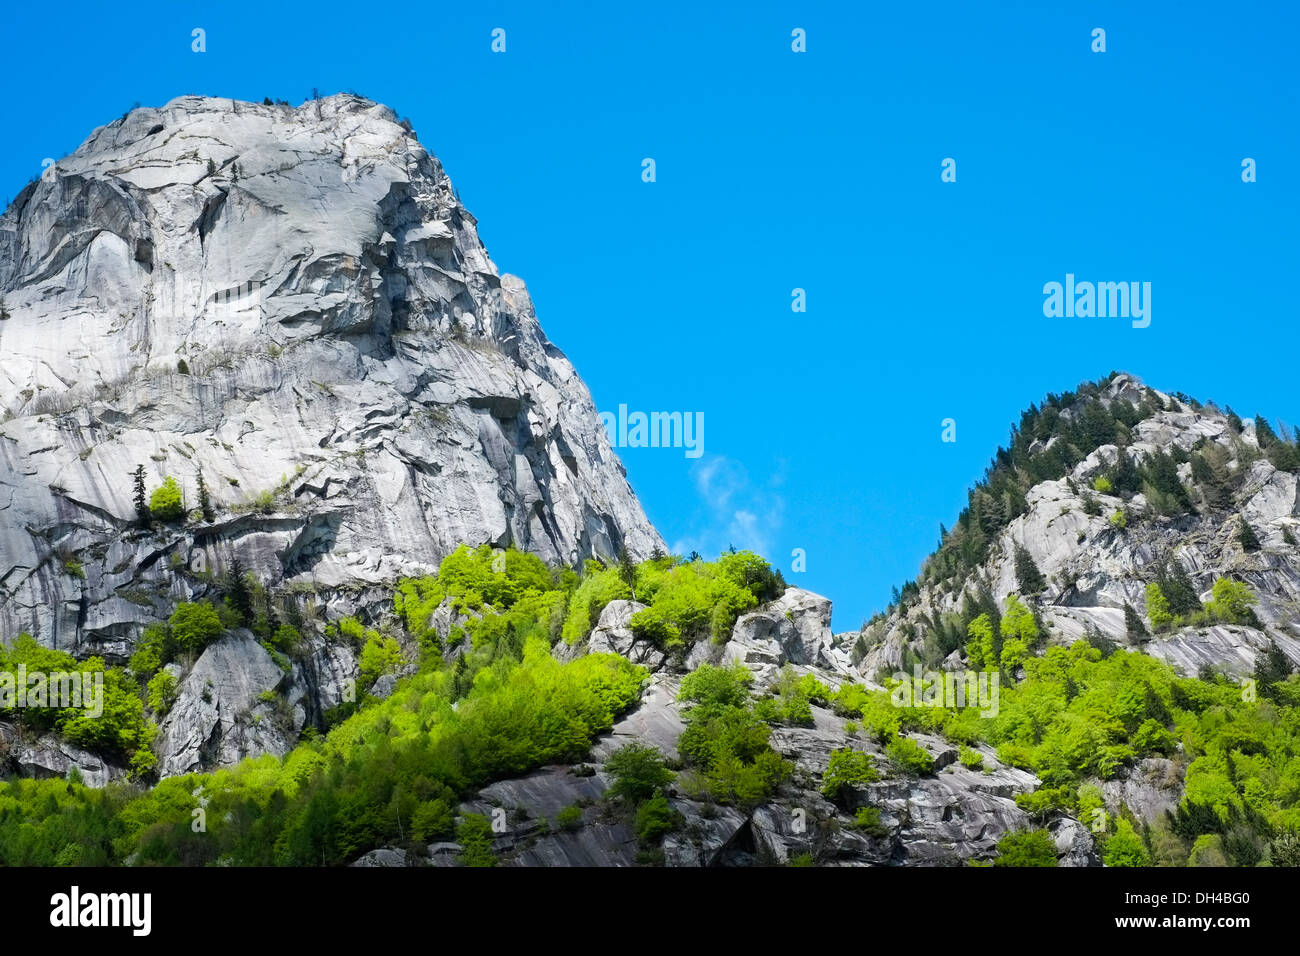 Granite mountains in Val di Mello, Val Masino, Italy Stock Photo